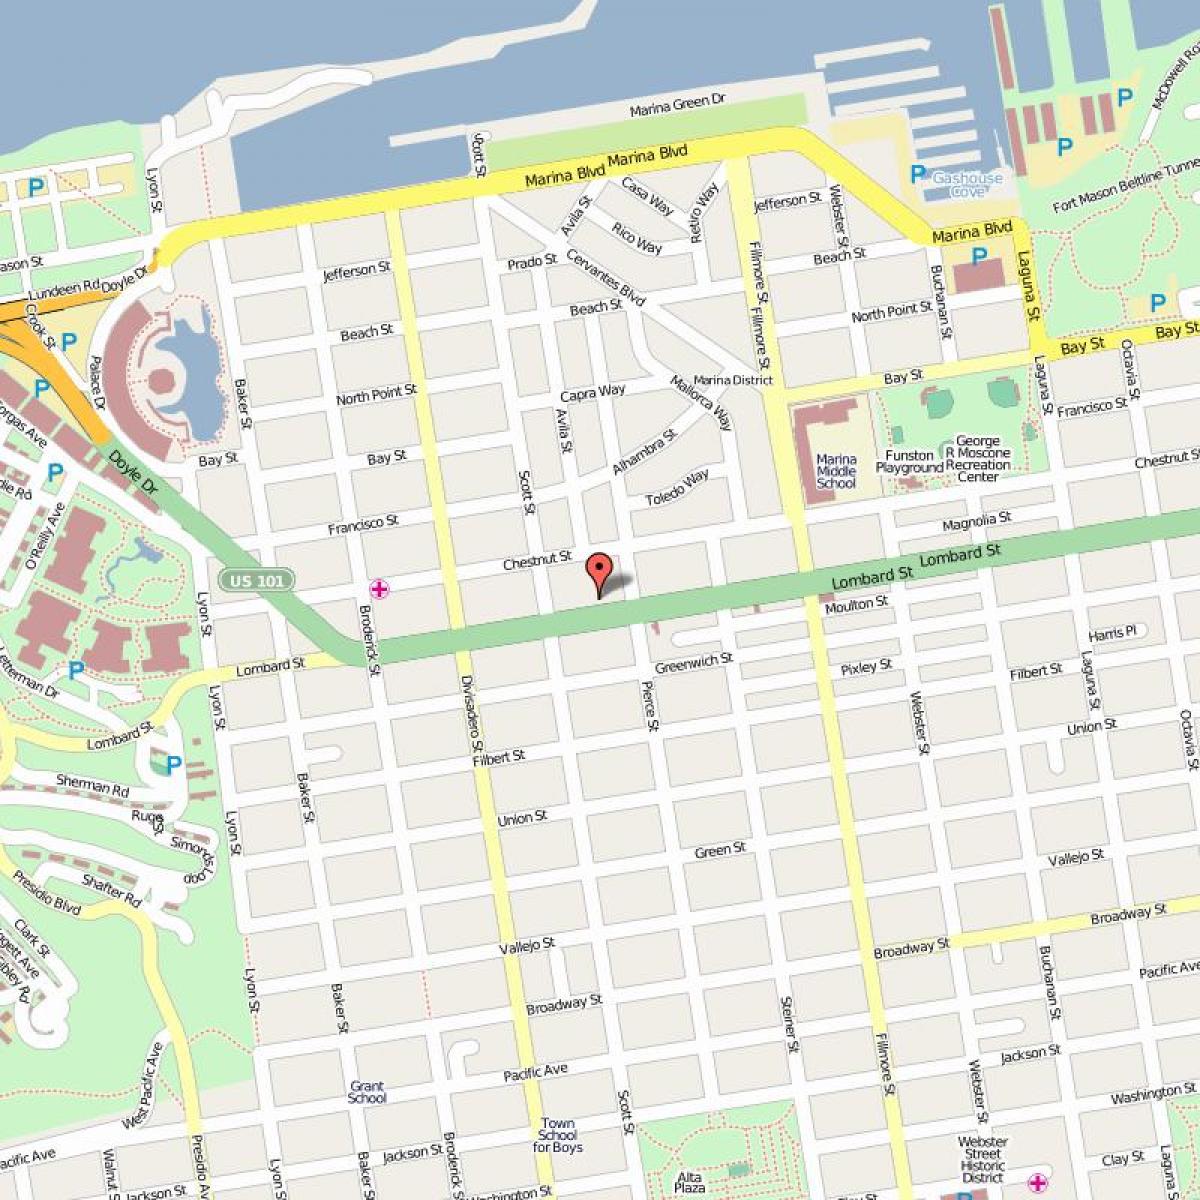 Χάρτης της lombard street στο Σαν Φρανσίσκο